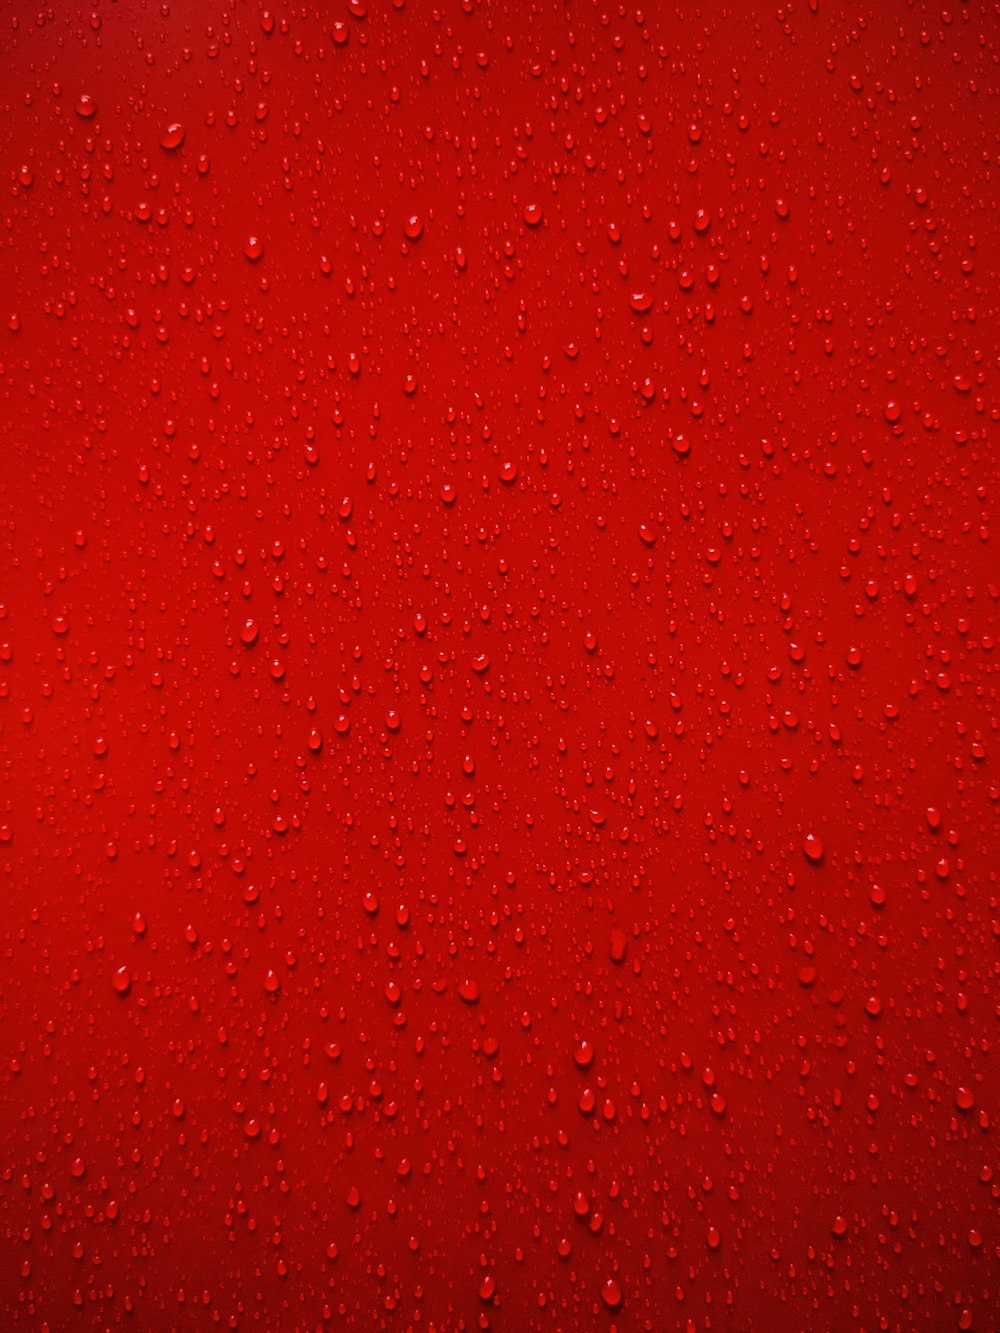 pintura abstrata vermelha e branca